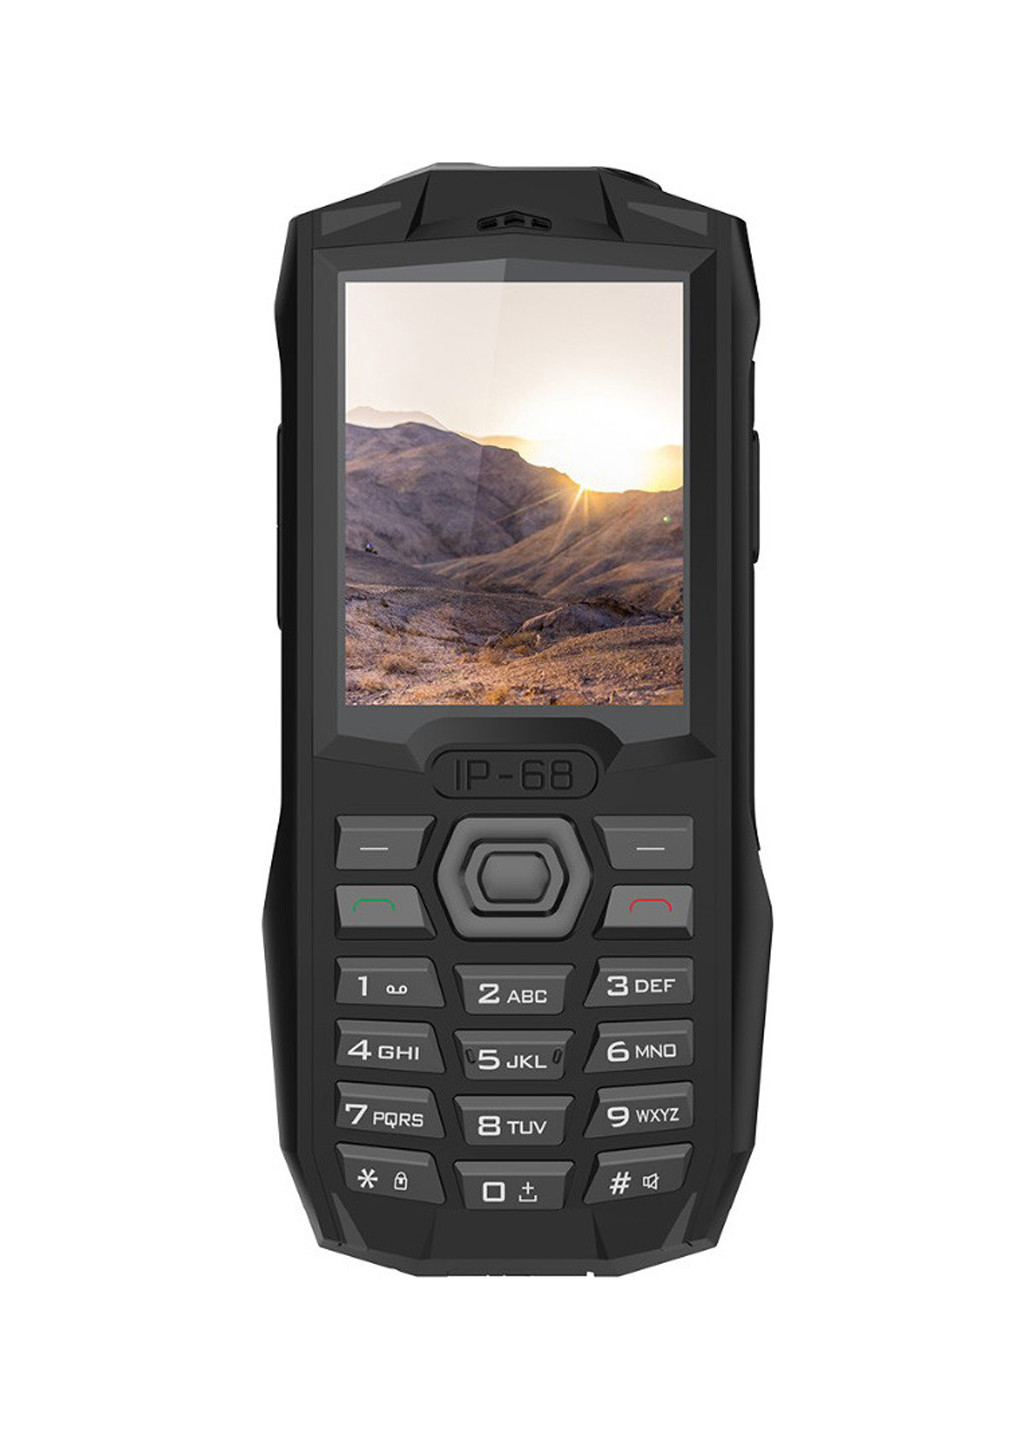 Мобільний телефон Blackview BV1000 чорний